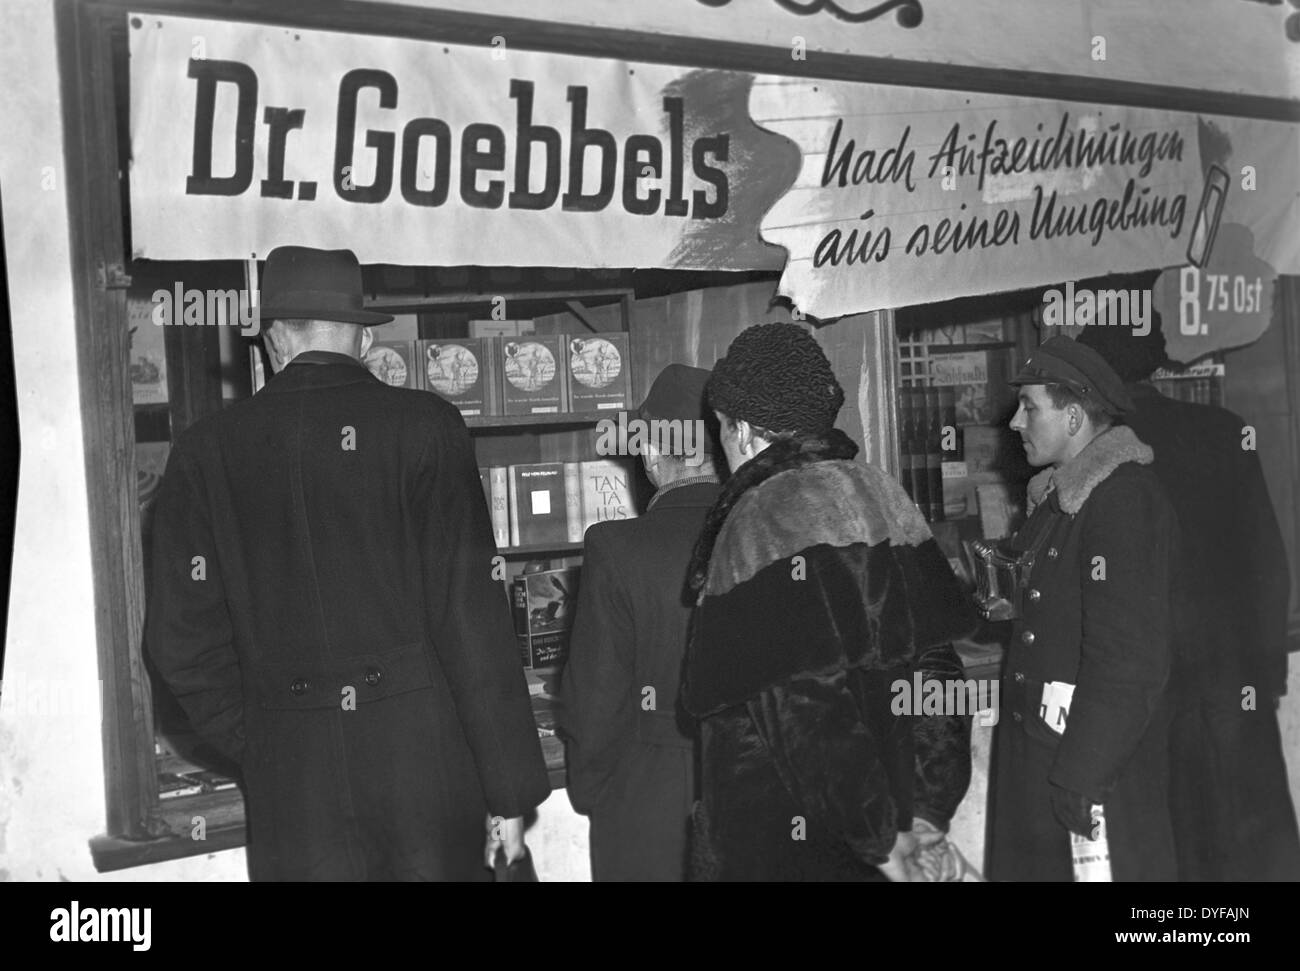 Passanten auf einer Buchhandlung Display schauen, wo ein Exemplar des Buches "Dr. Goebbels. Nach Aufzeichnungen aus Seiner Umgebung "(beleuchtet: Dr. Goebbels, nach Aufzeichnungen von seiner Umgebung) in Berlin, Deutschland, 1949. Foto: Zbarchiv - NO-Draht-SERVICE Stockfoto